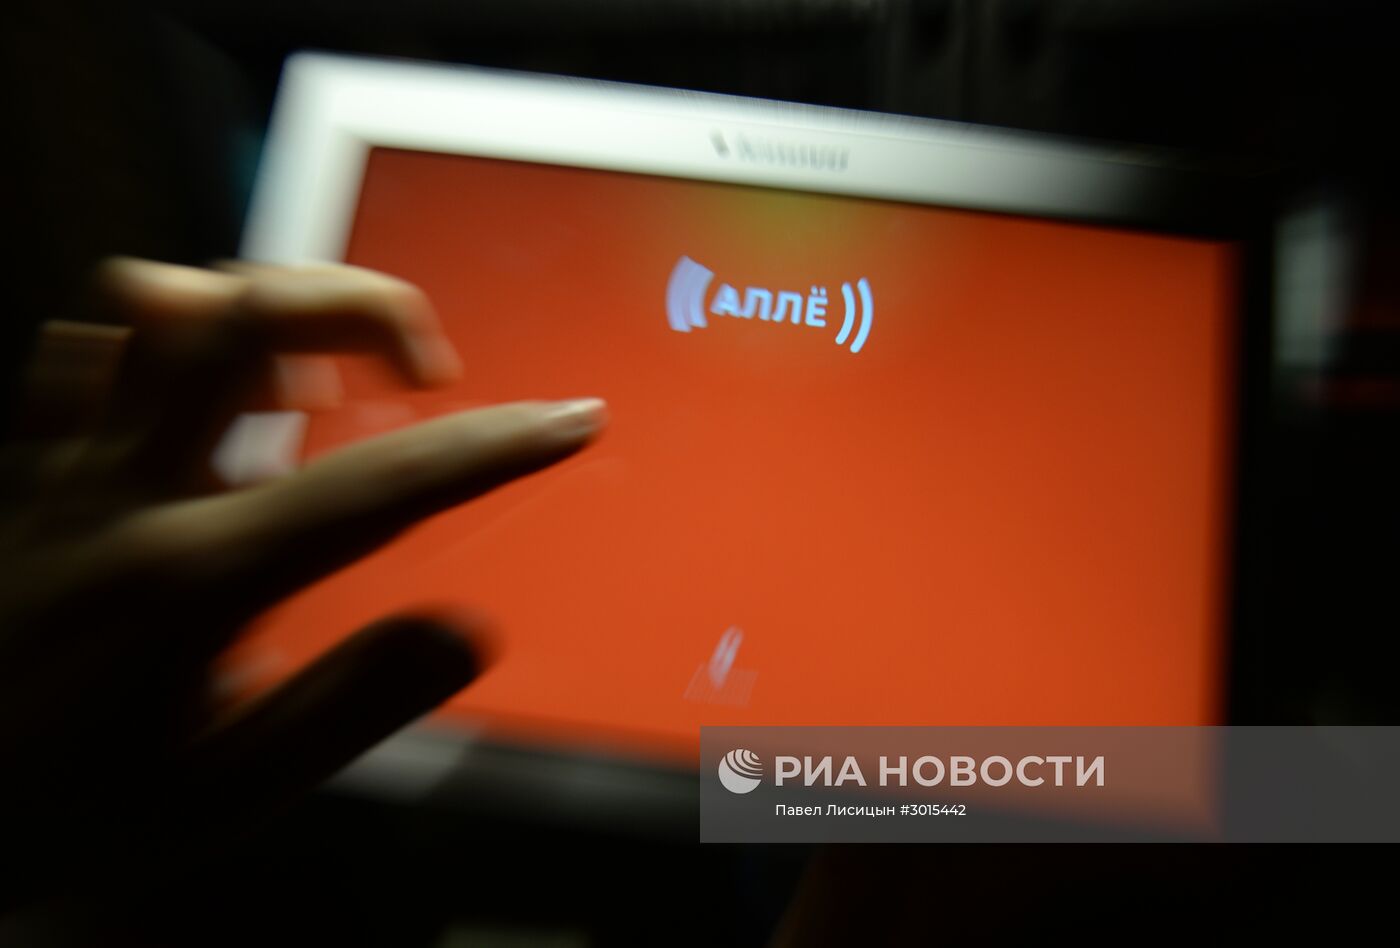 Компания "Ростелеком" объявила о запуске мессенджера под названием "Аллё"